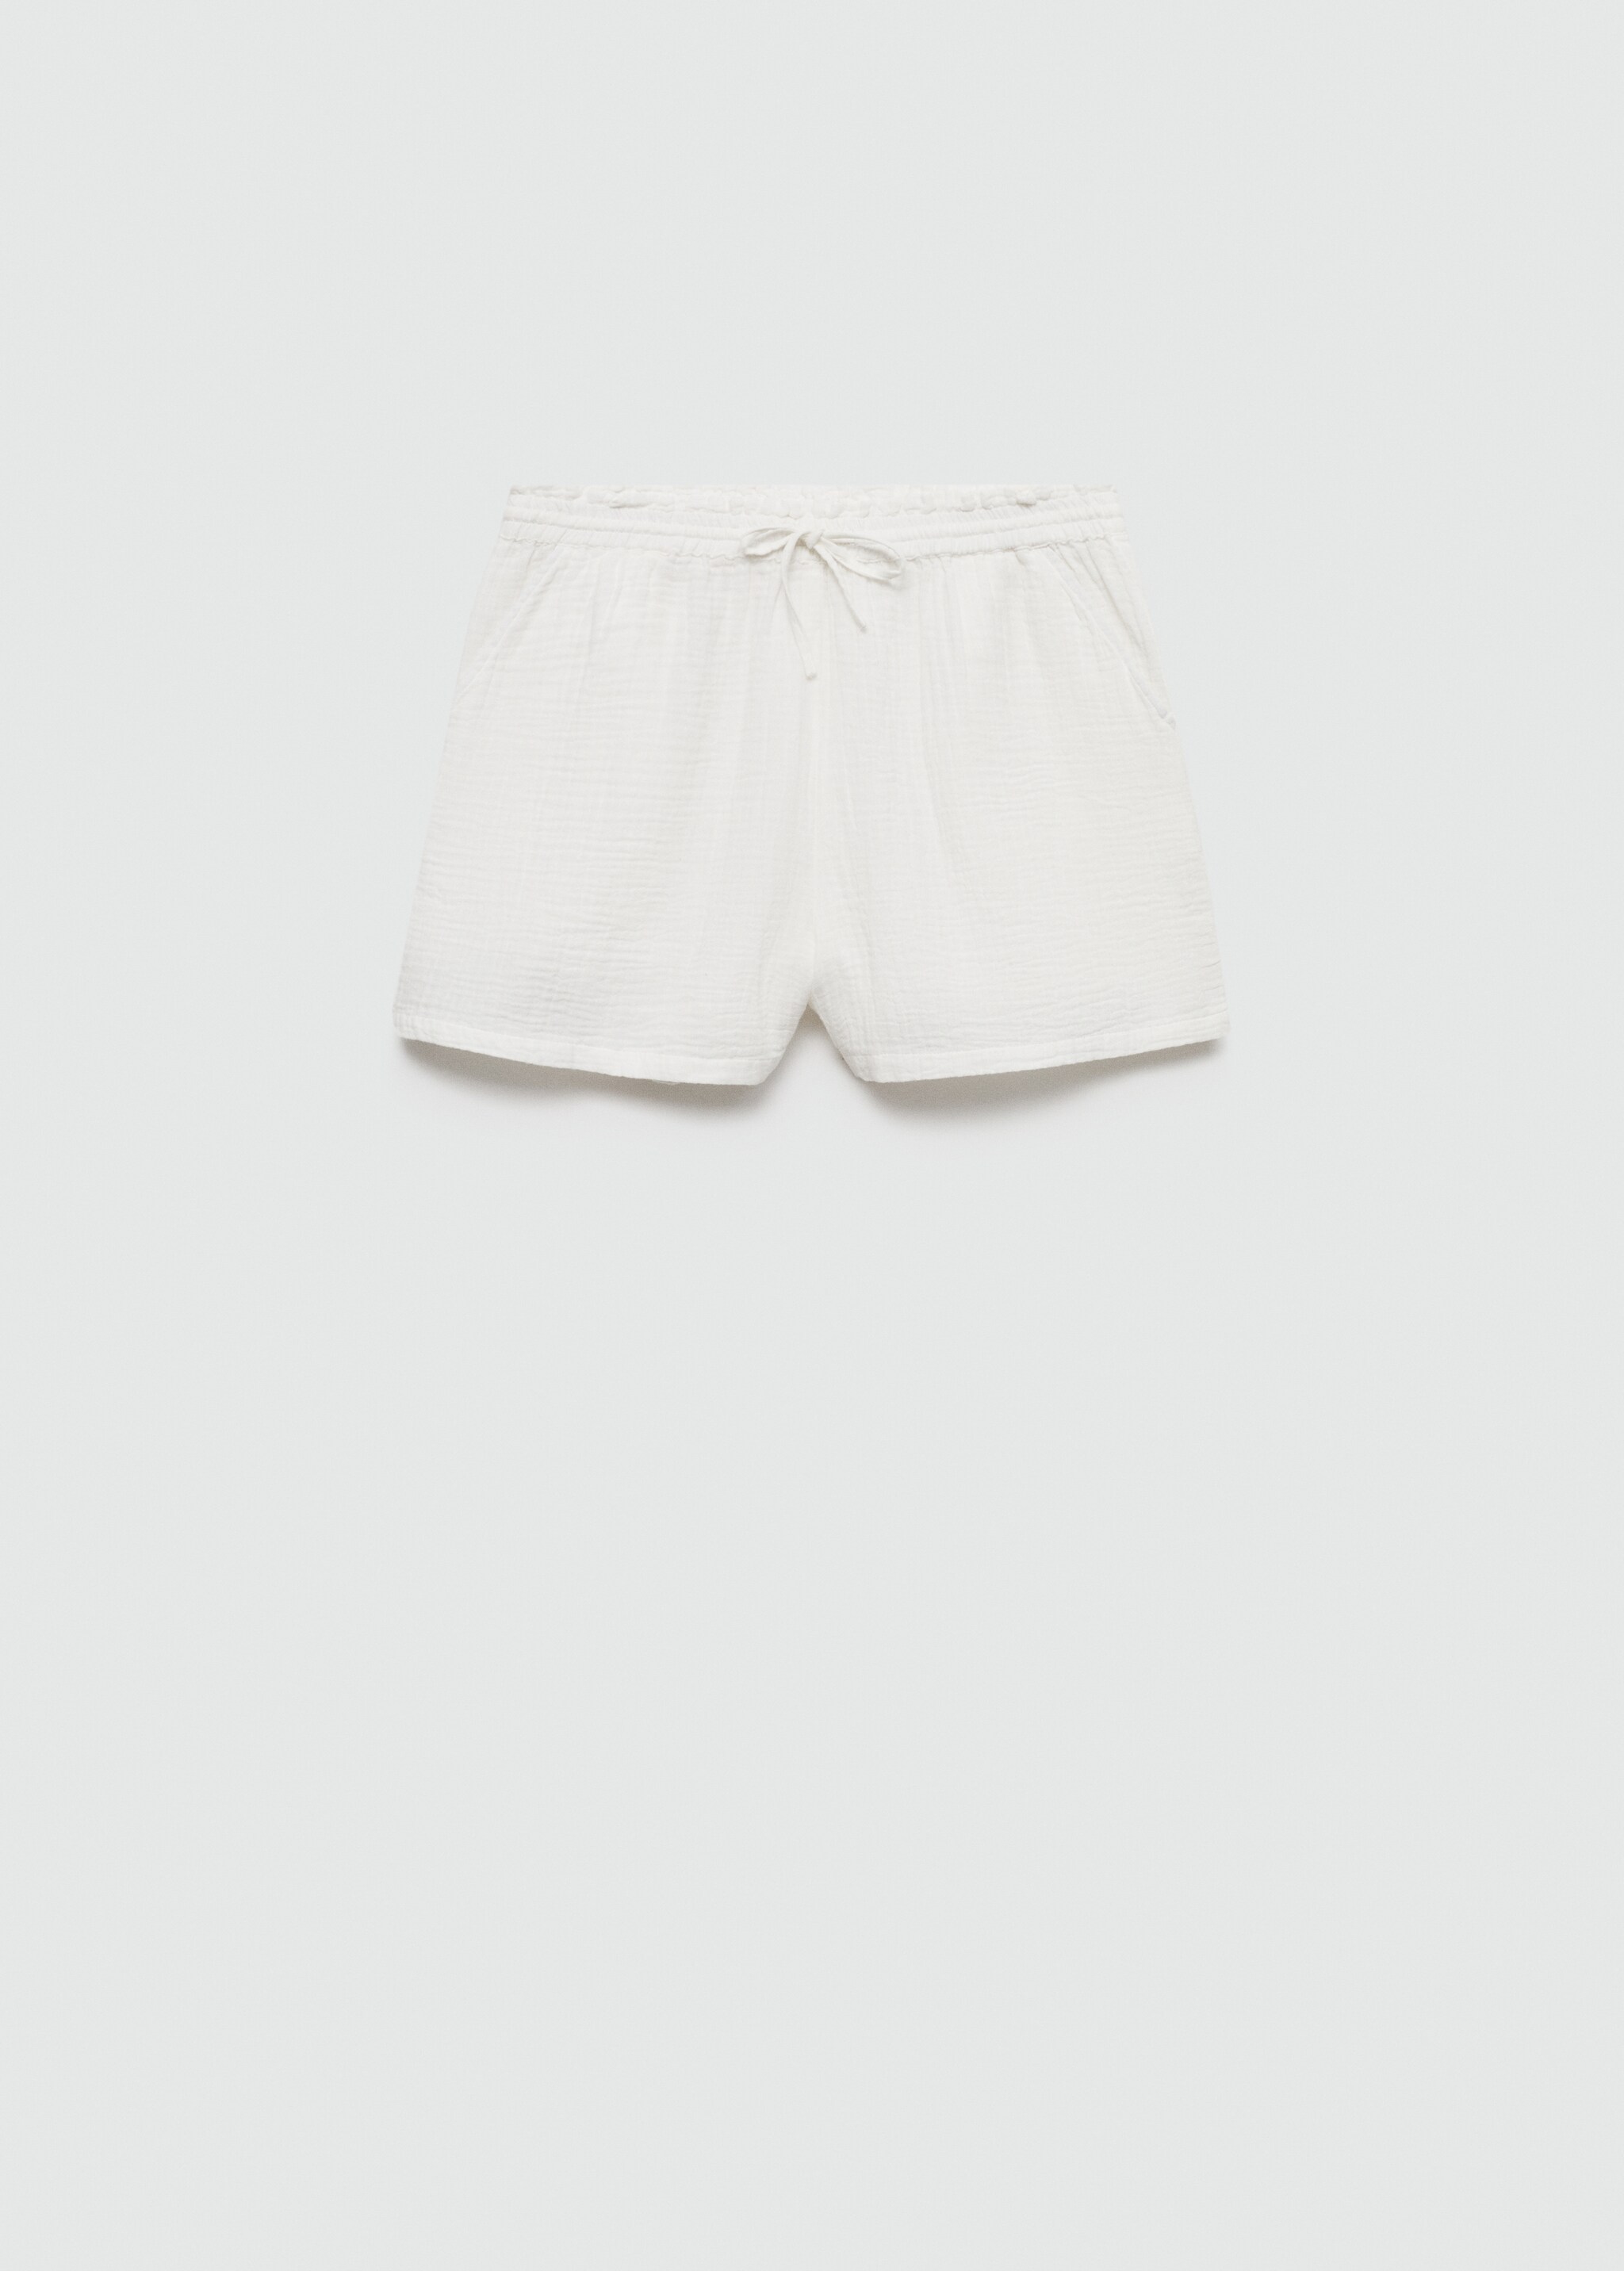 Shorts algodón cintura elástica - Artículo sin modelo